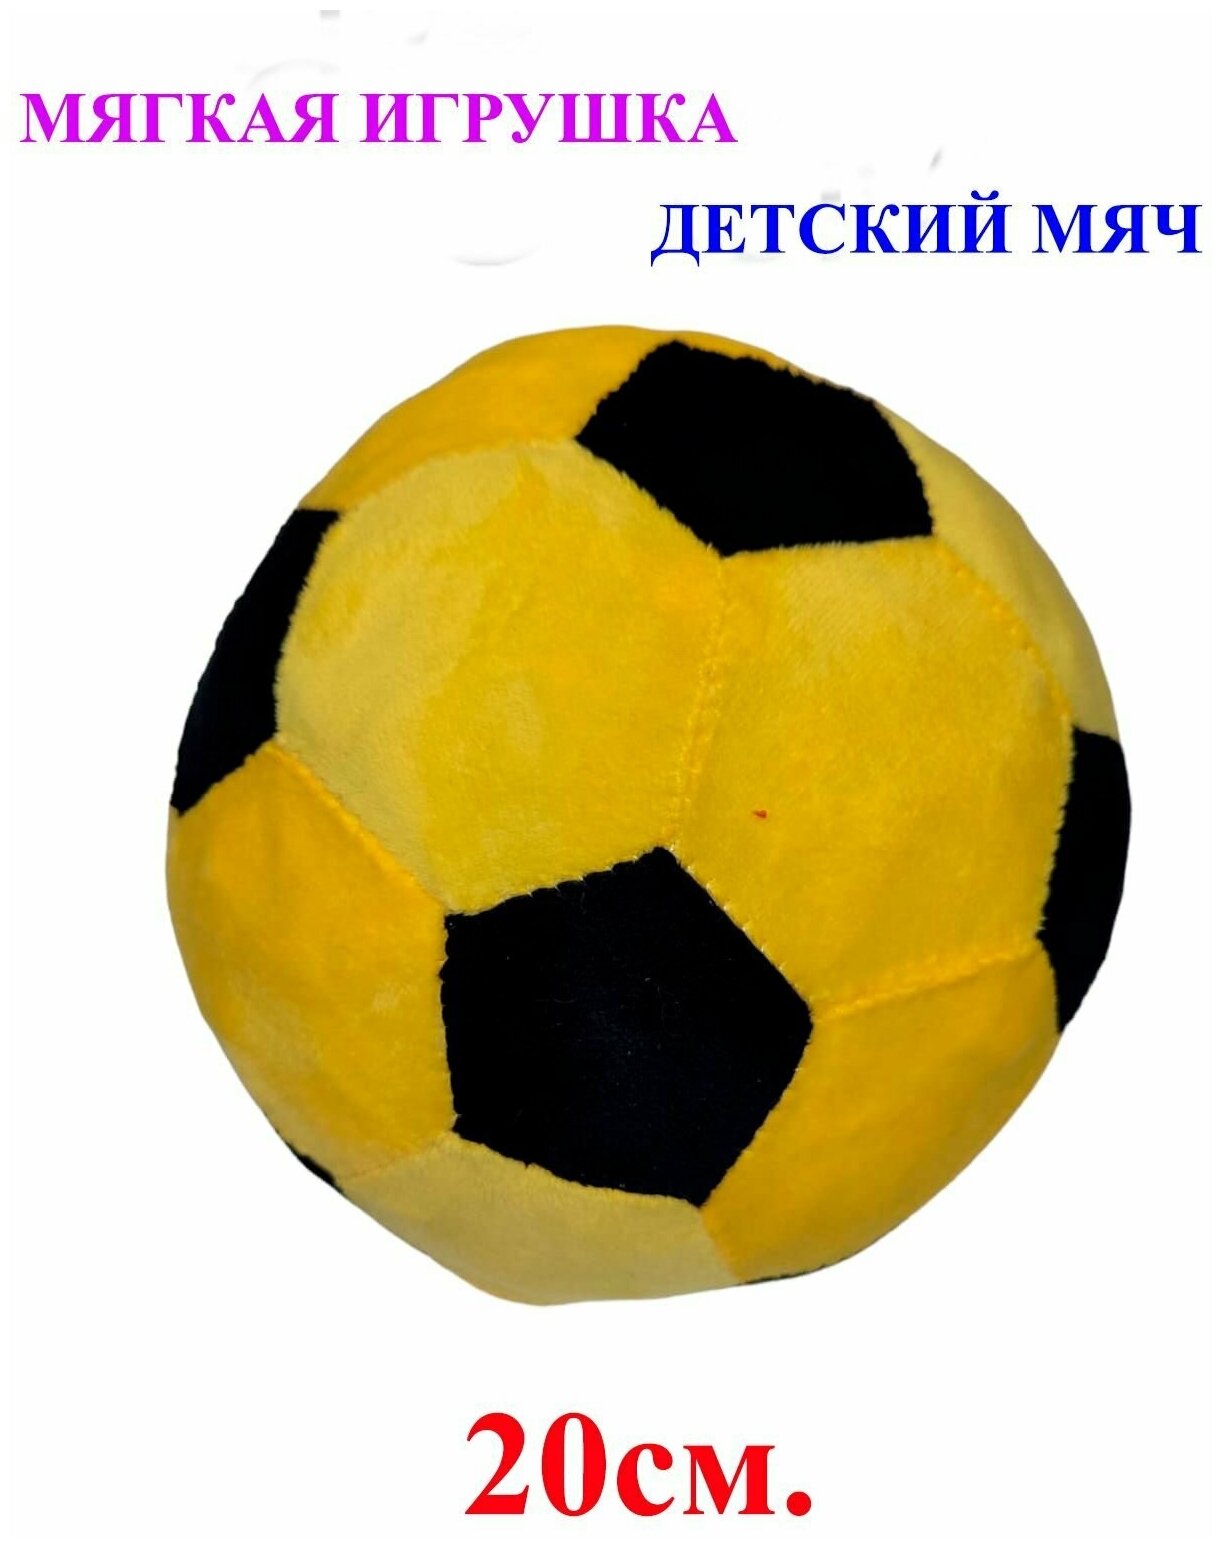 Мягкая игрушка детский футбольный мяч жёлтый. 20 см. Плюшевый мягкий мячик для детей.